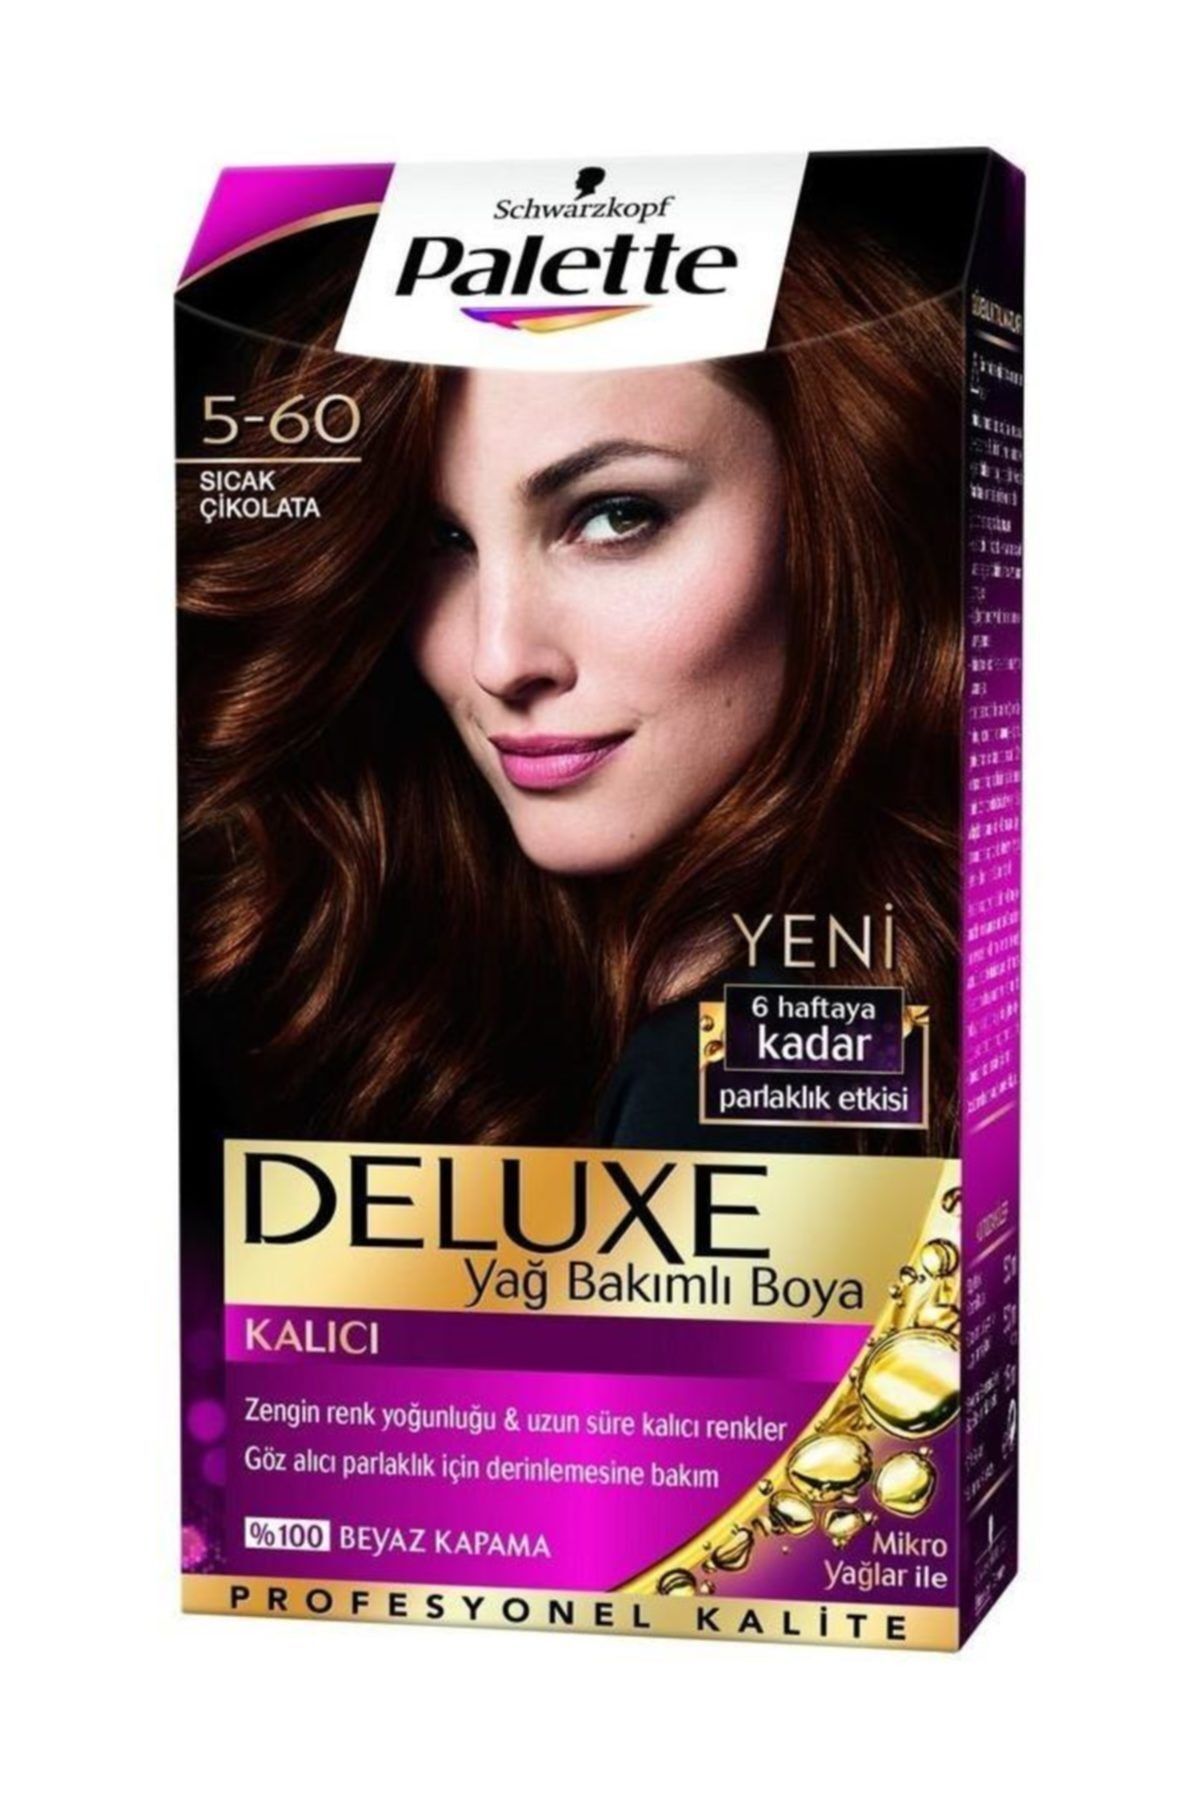 Palette Saç Boyası - Deluxe 5-60 Sıcak Çikolata 50 ml